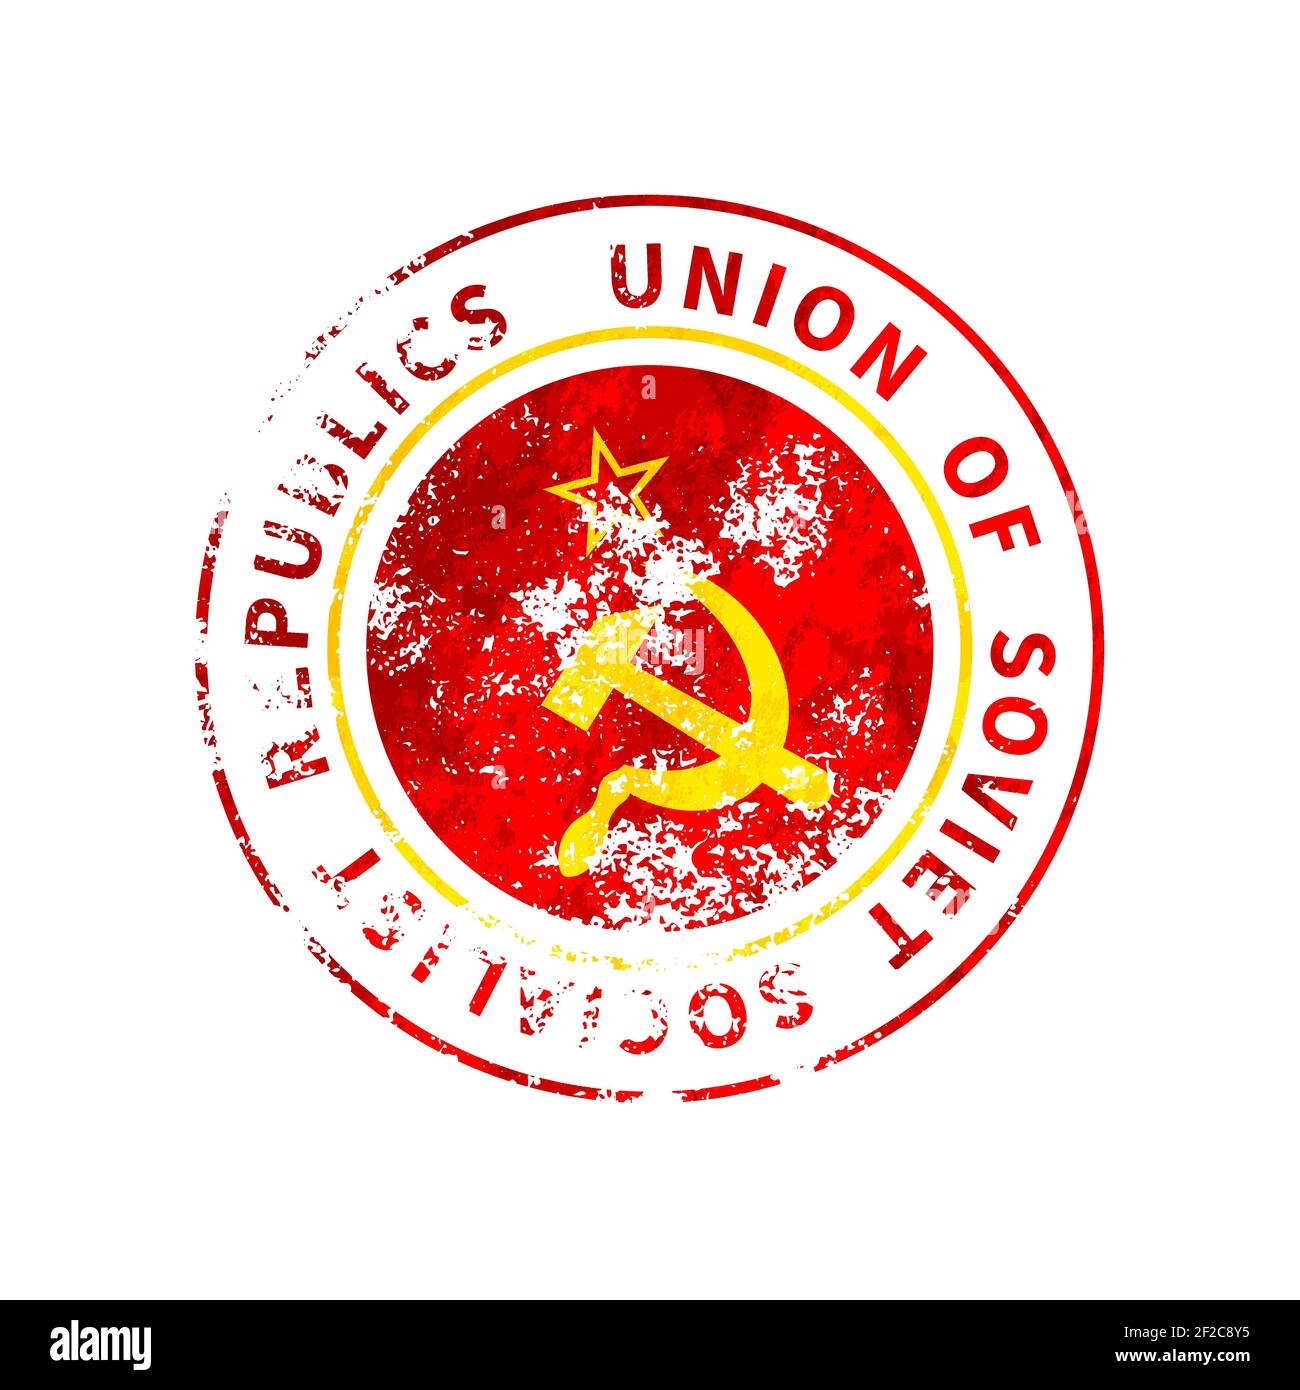 Zeichen der Union der Sozialistischen Sowjetrepubliken, Vintage-Grunge-Aufdruck mit UdSSR-Flagge auf Weiß Stock Vektor